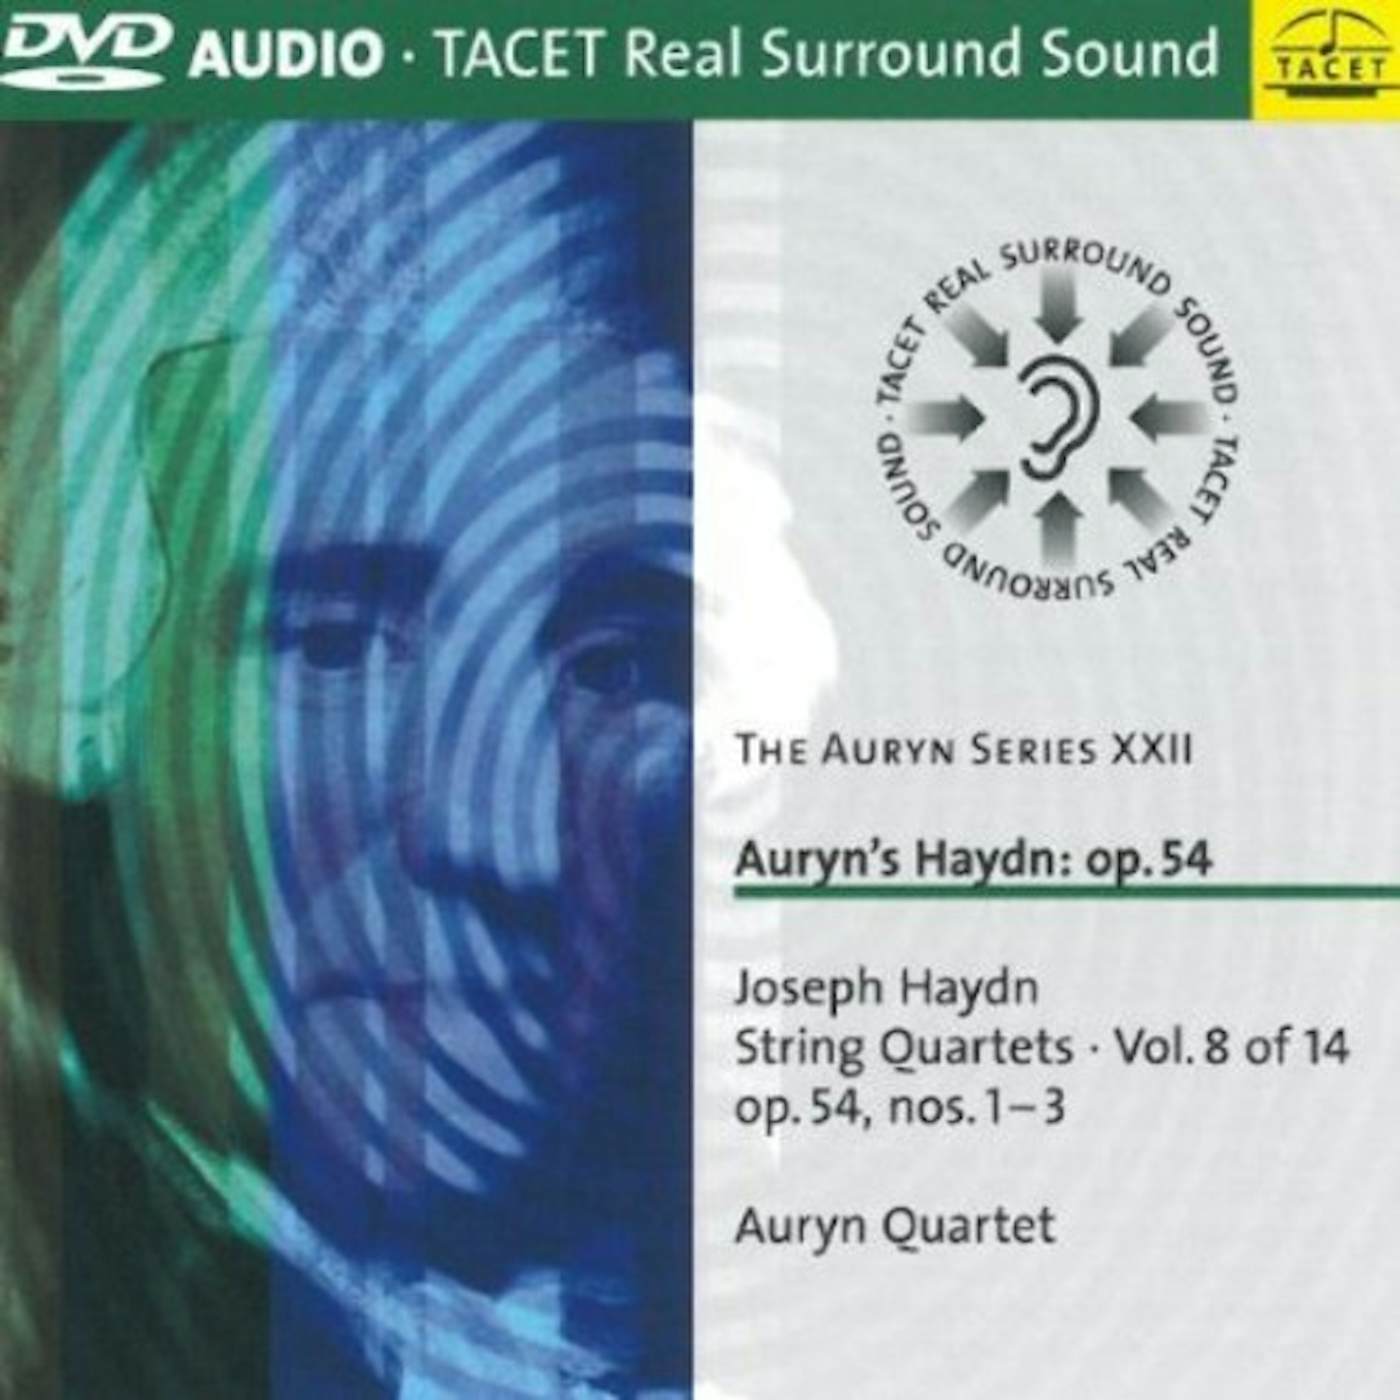 Haydn AURYN SERIES VOL. XXII / AURYN DVD Audio